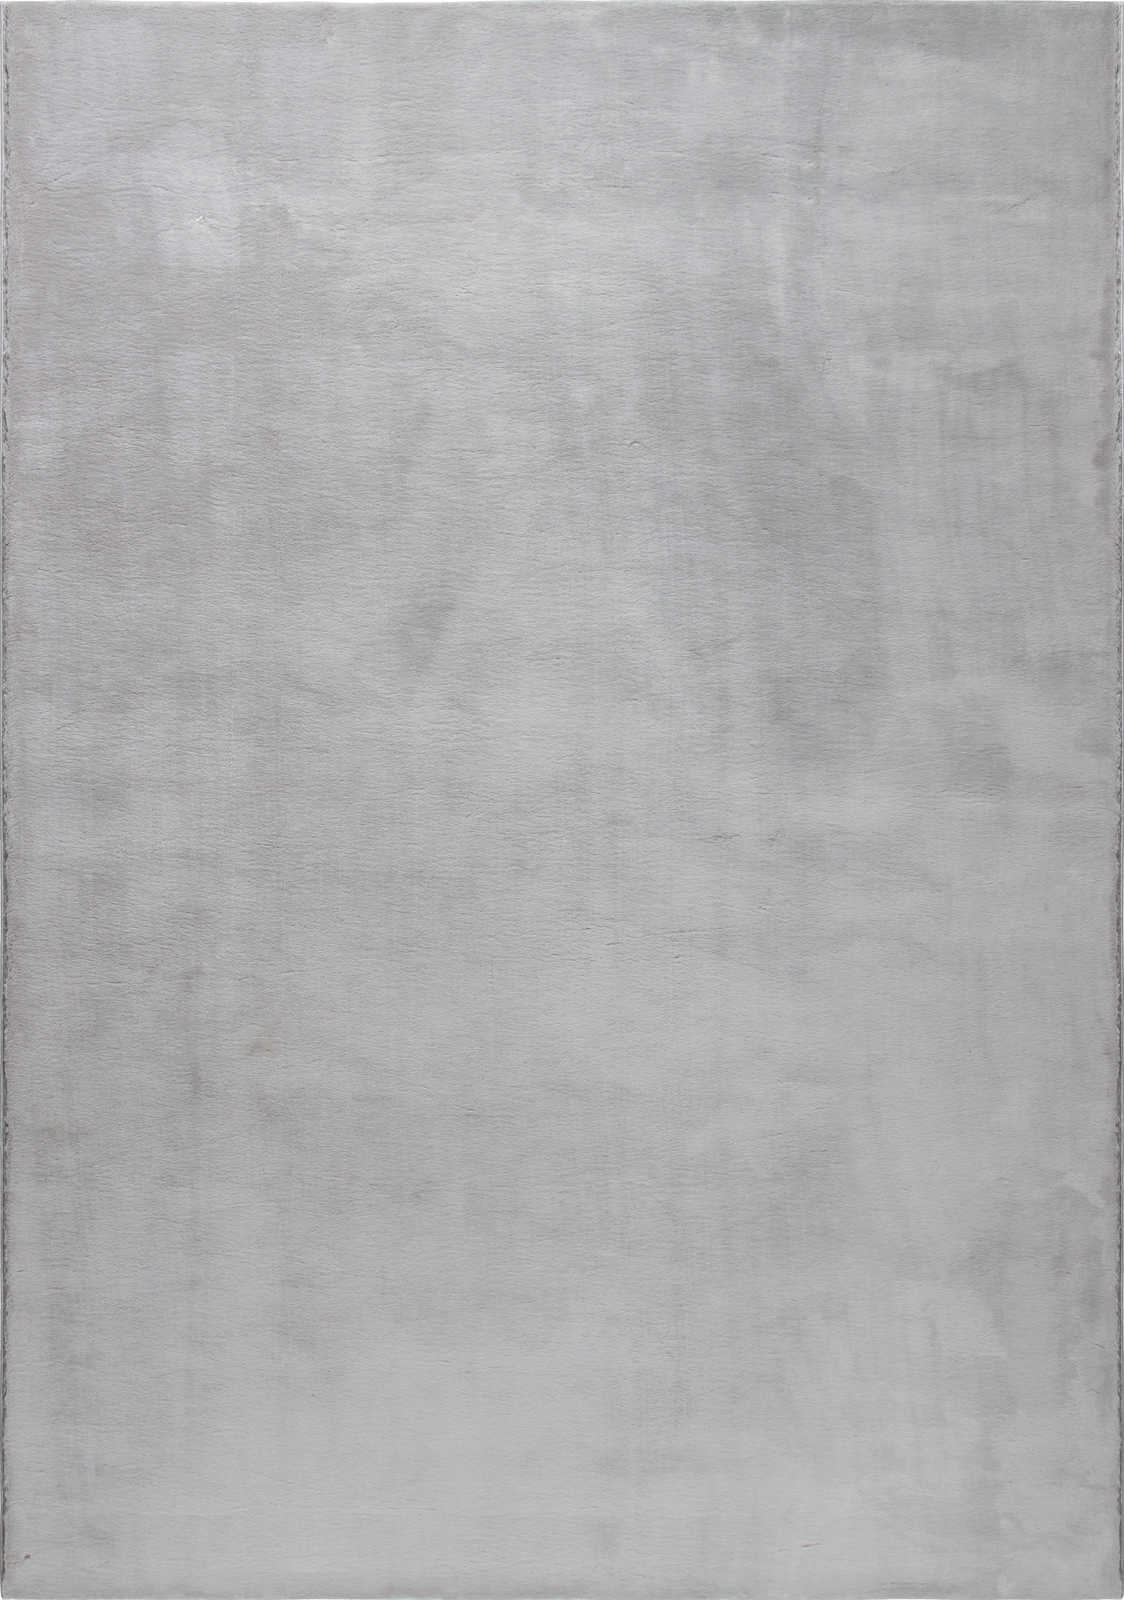             Kuscheliger Hochflor Teppich in sanften Grau – 110 x 60 cm
        